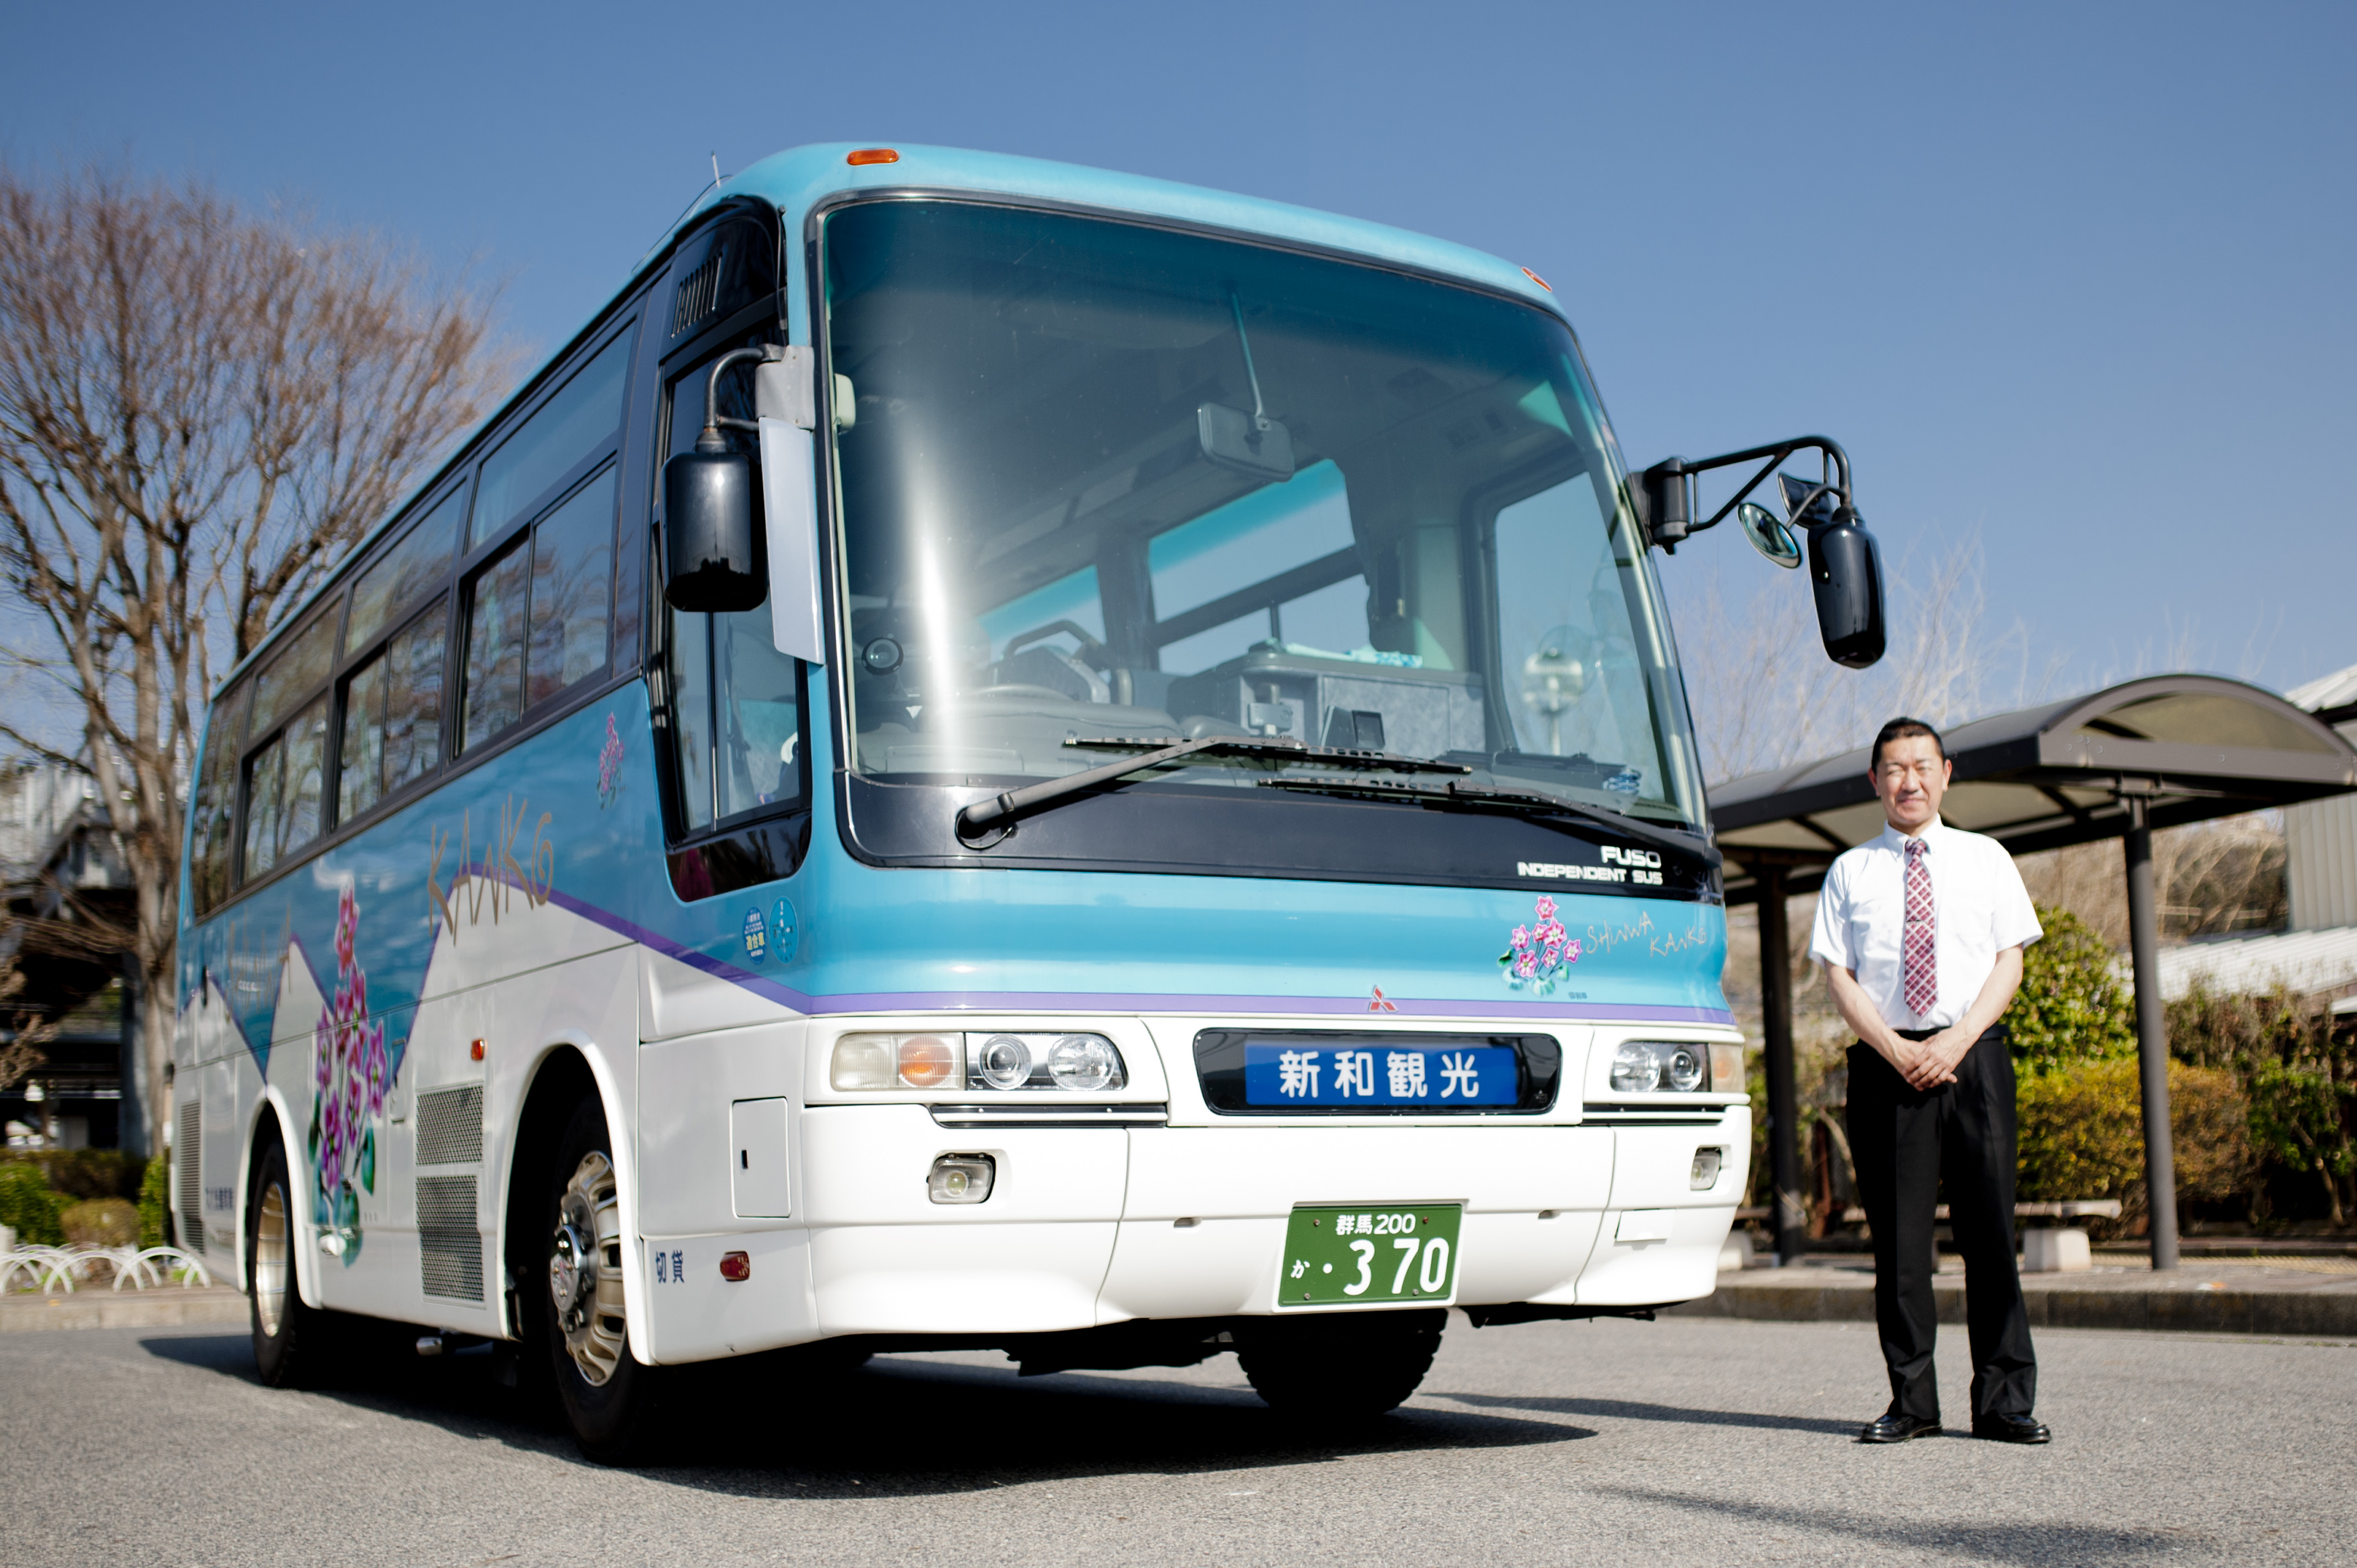 中型観光バス